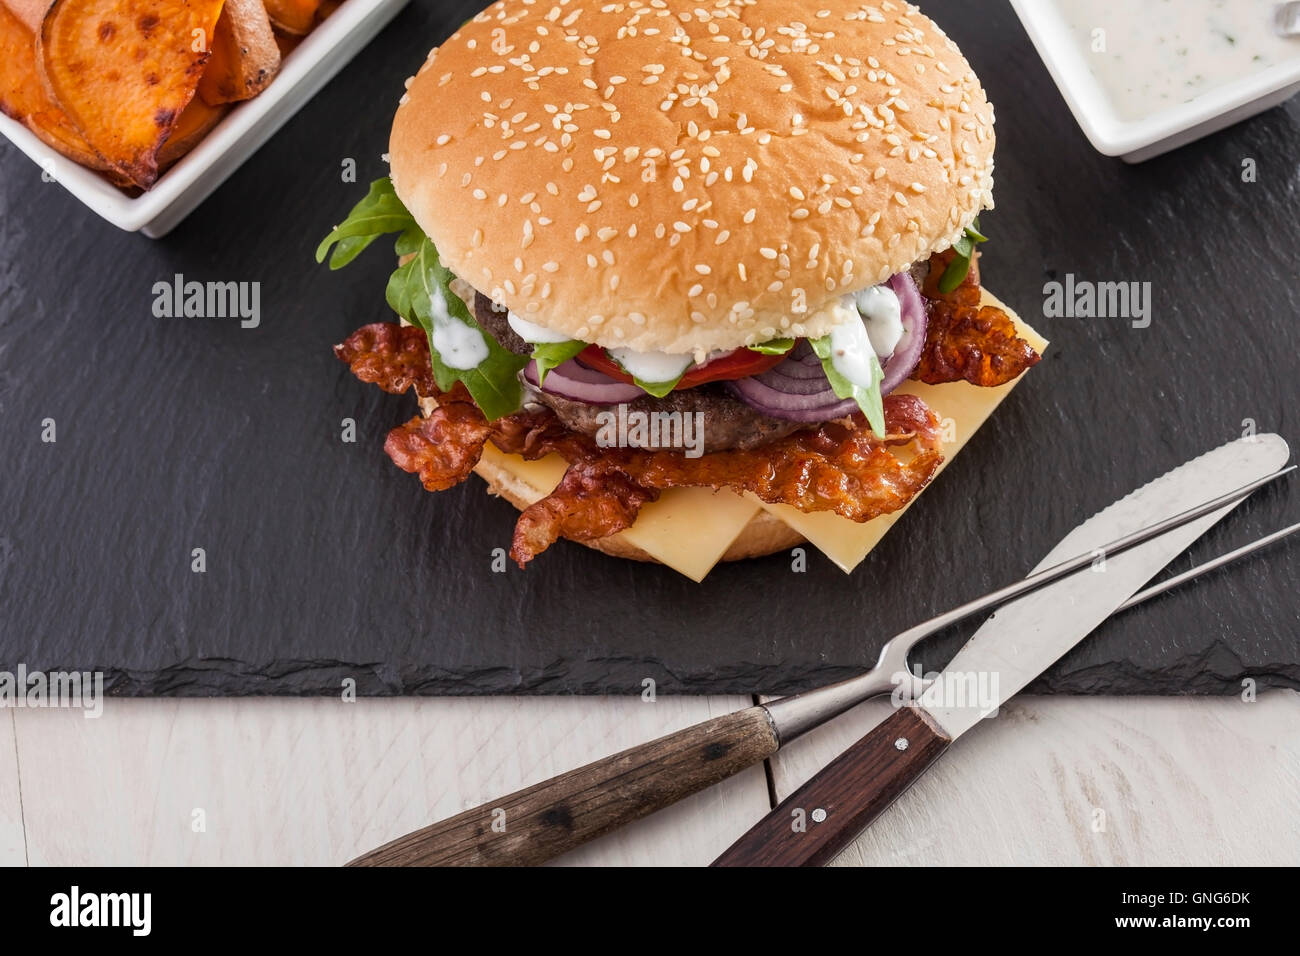 Gourmet home realizzati bacon cheeseburger su rustiche sfondi in legno Foto Stock